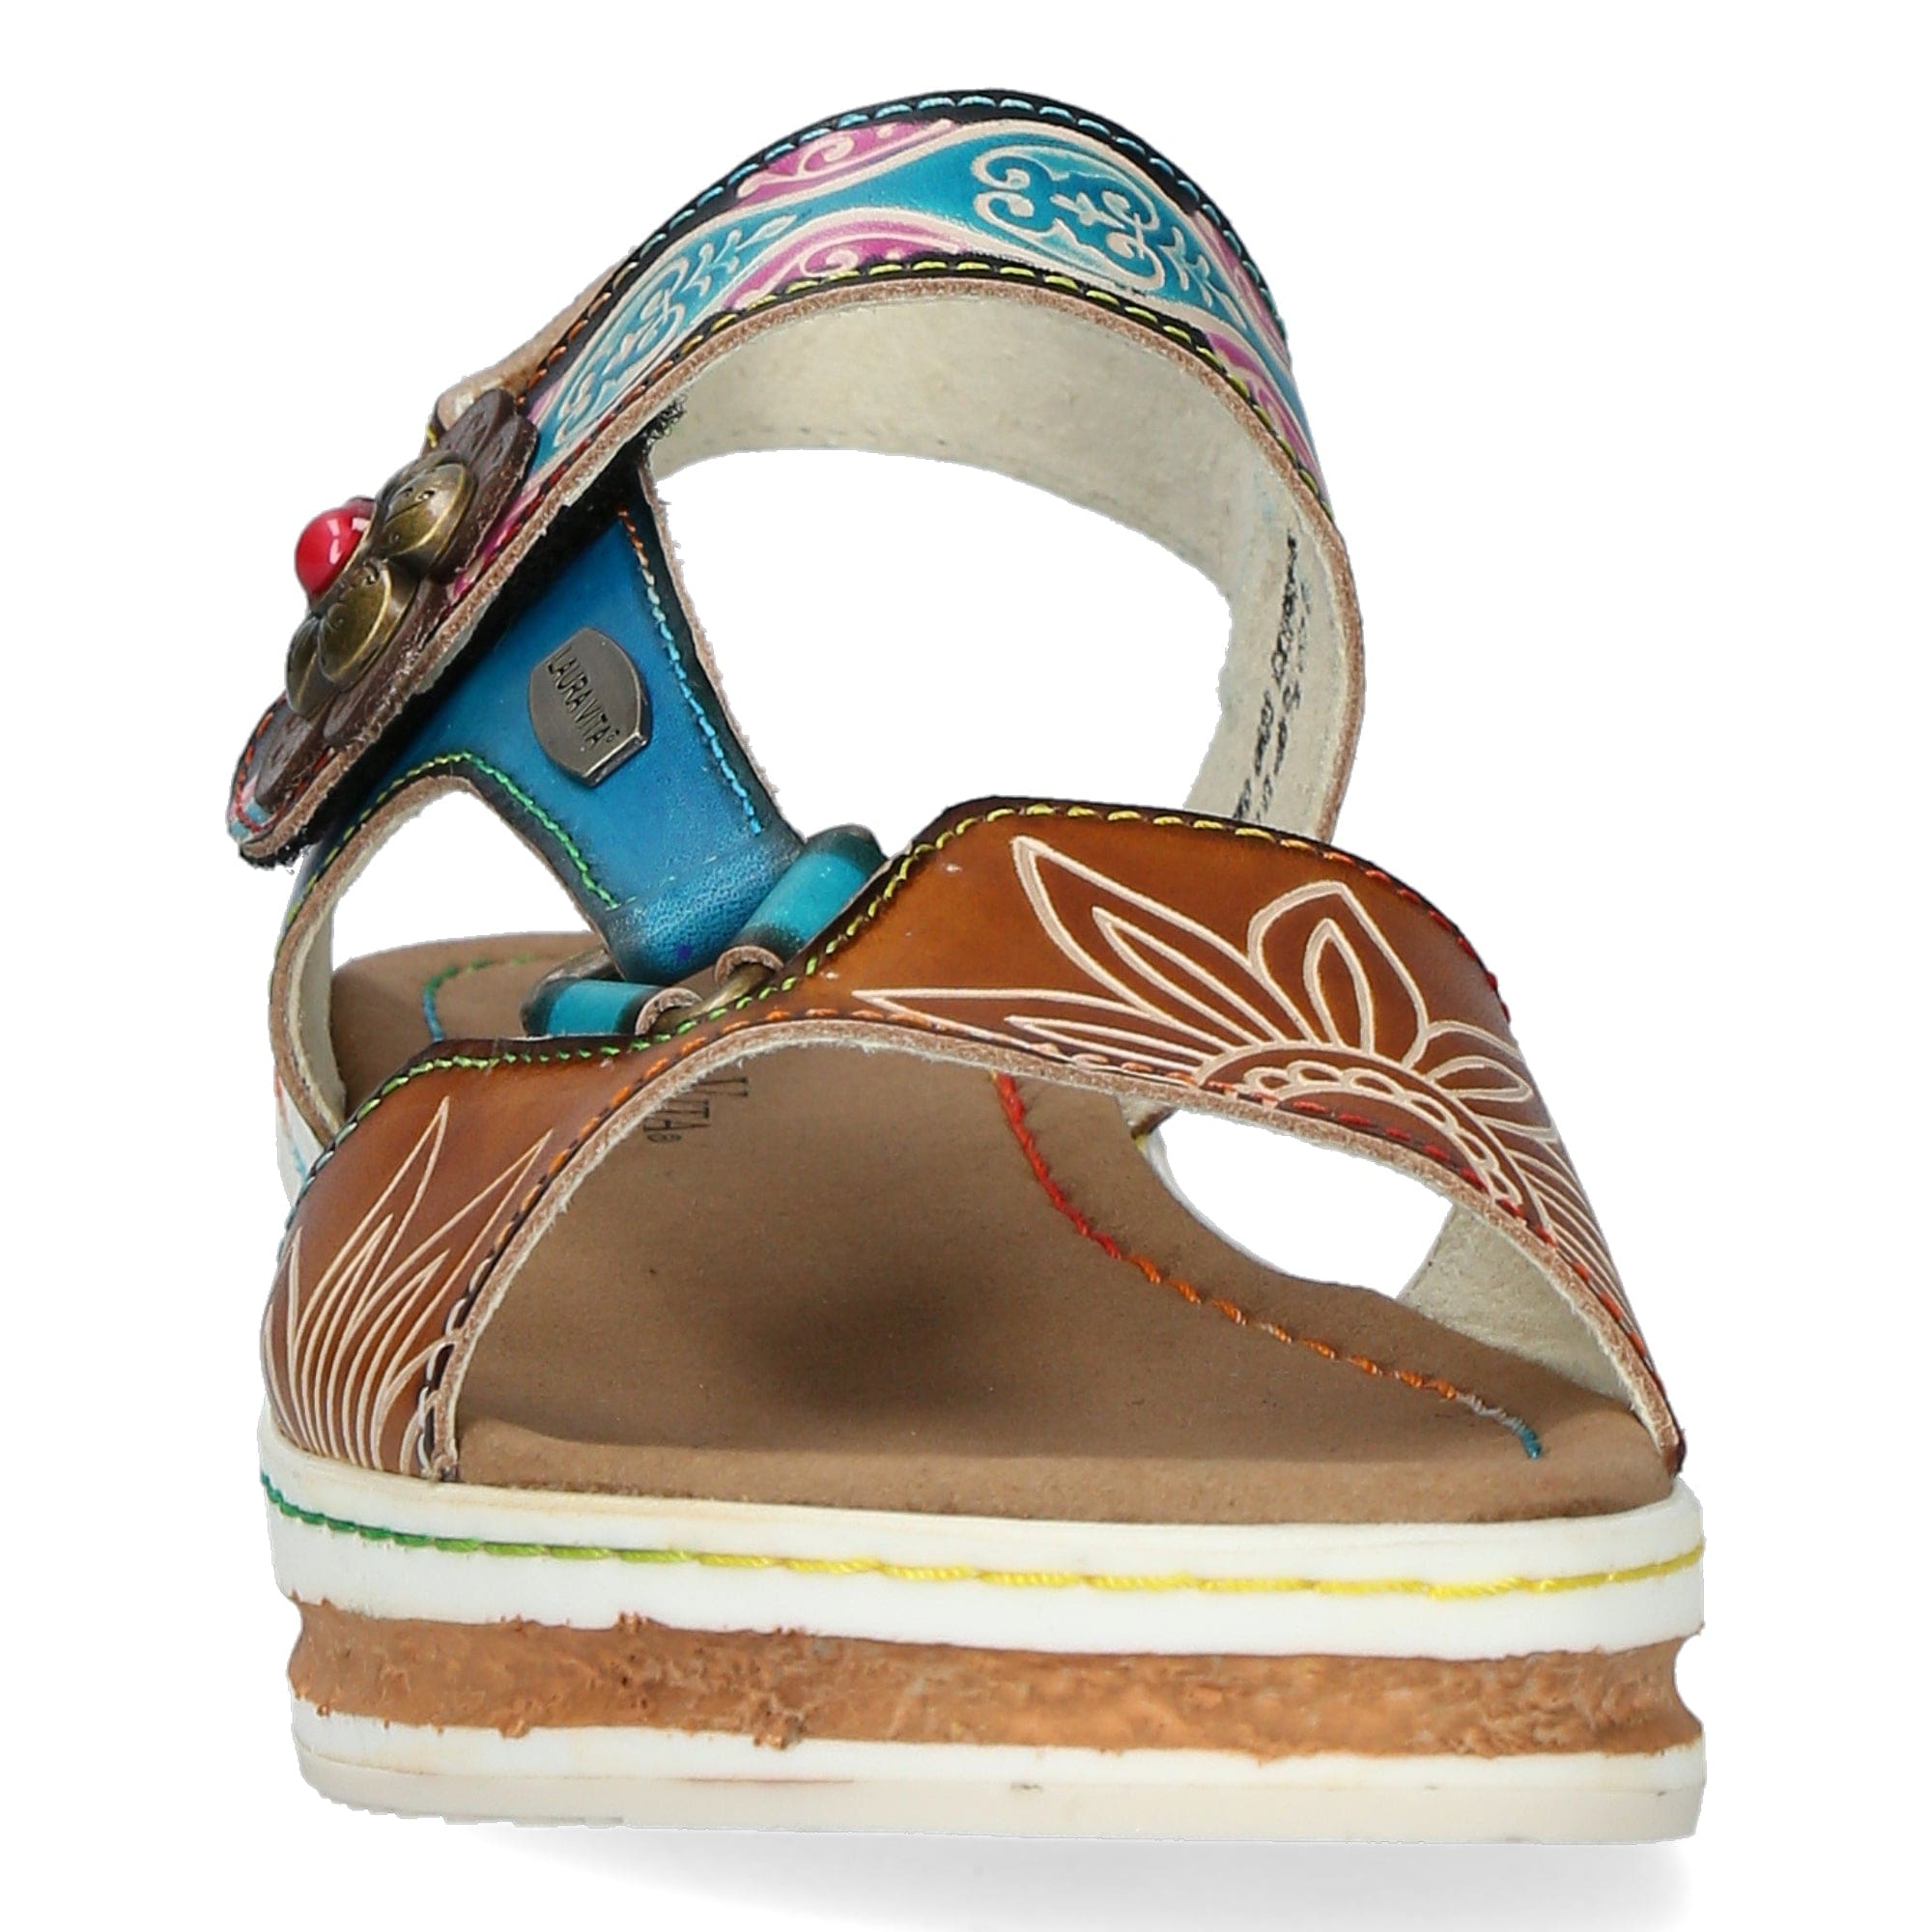 Schuh DICEZEO 0623 - Sandale